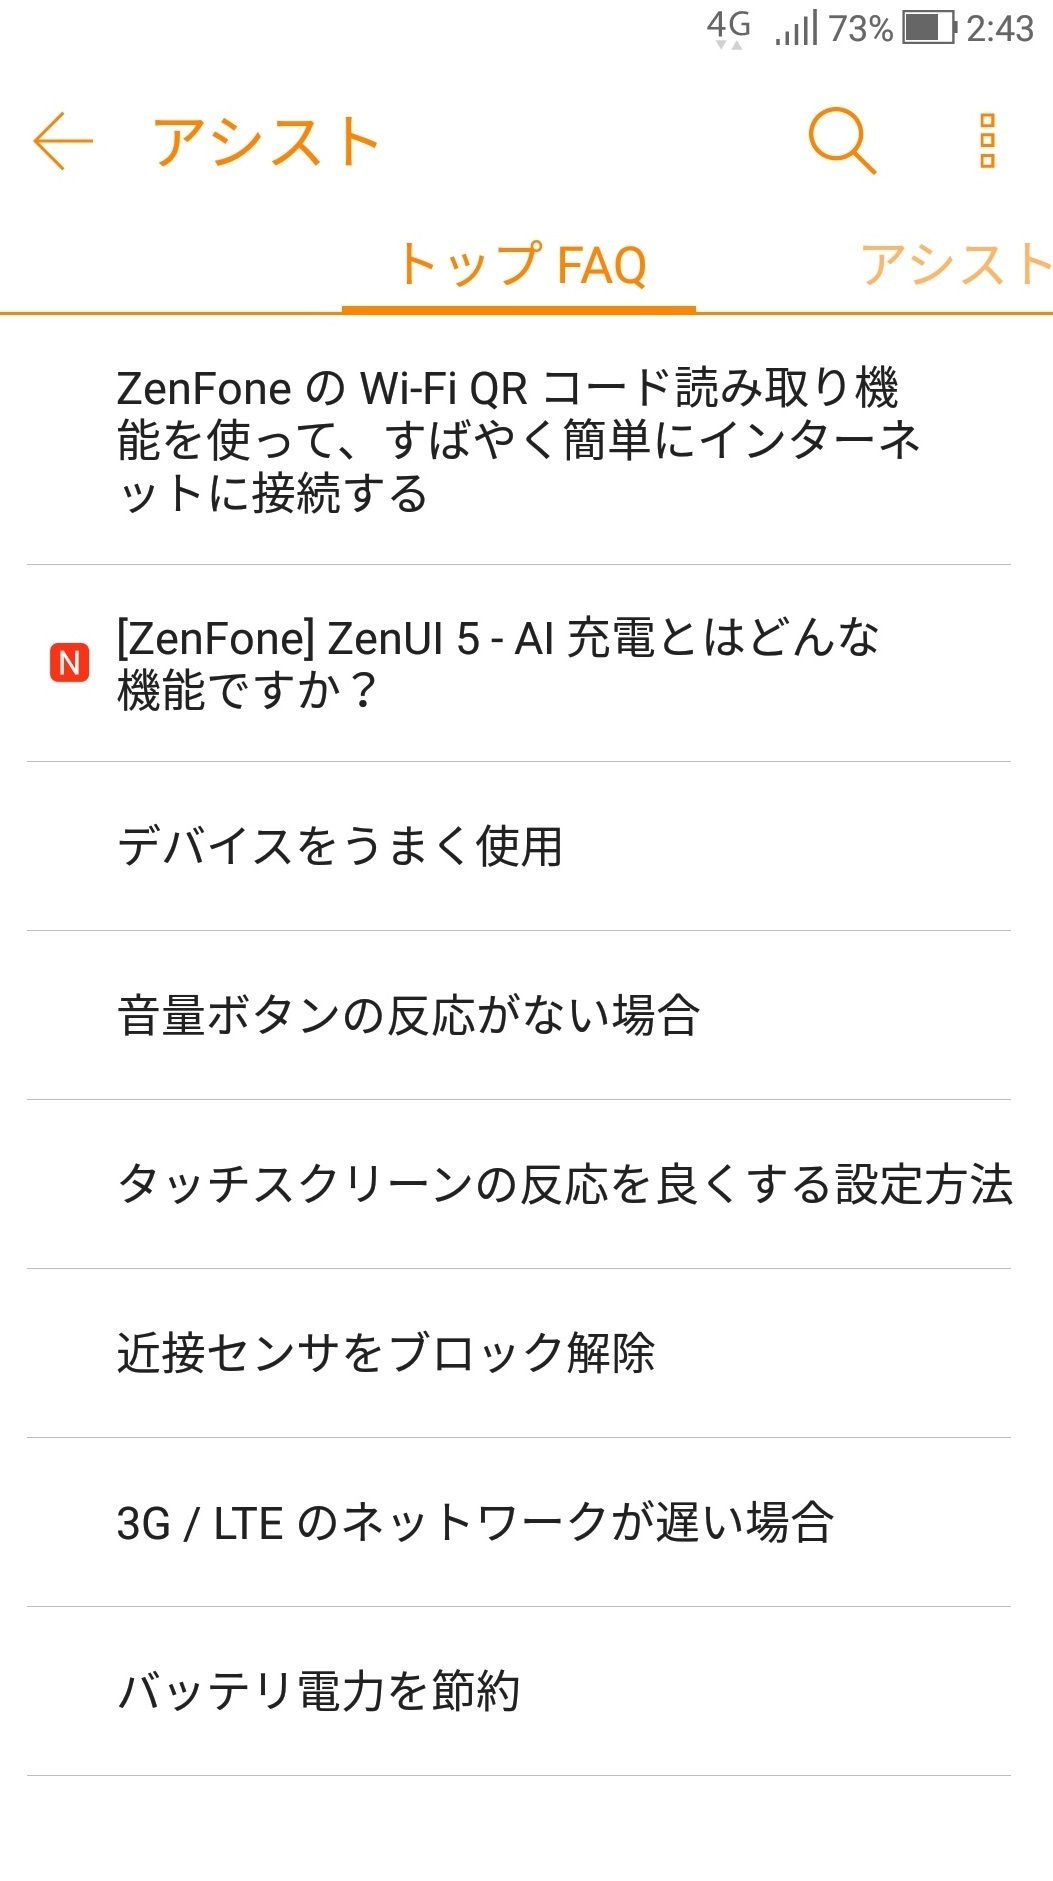 sumaho_settei_zenfone3_assist.jpg